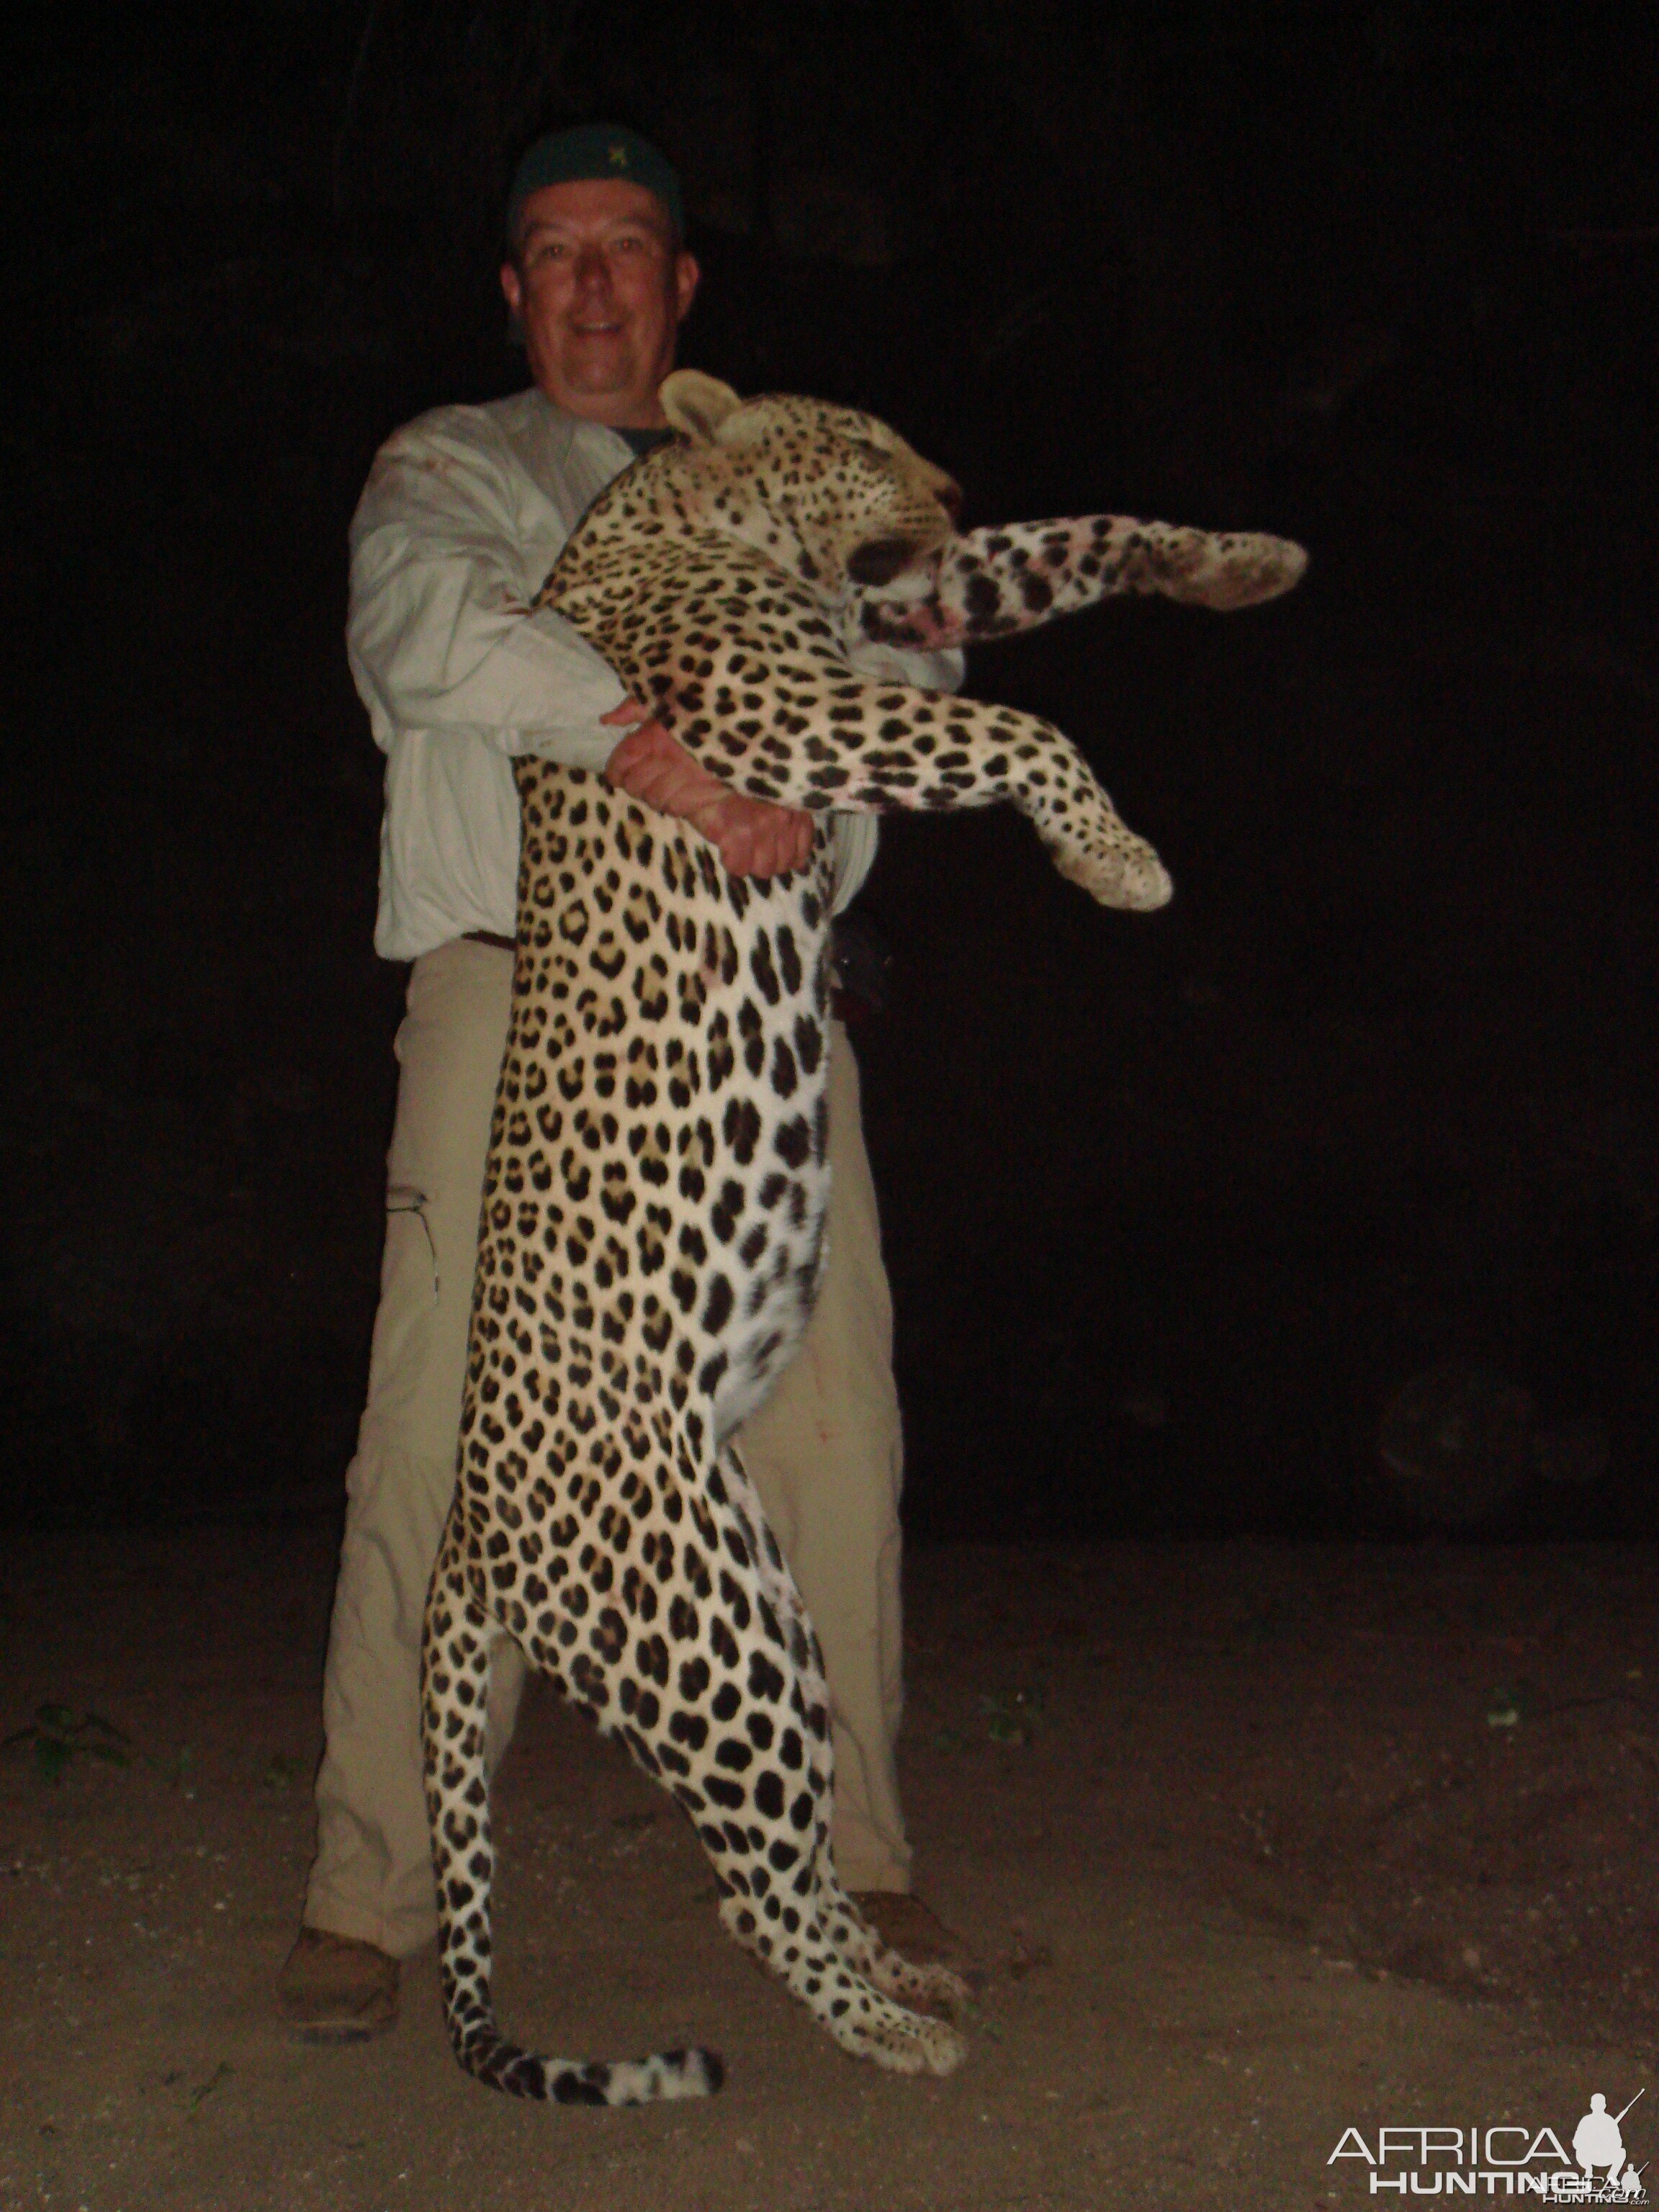 Leopard Zimbabwe 2010